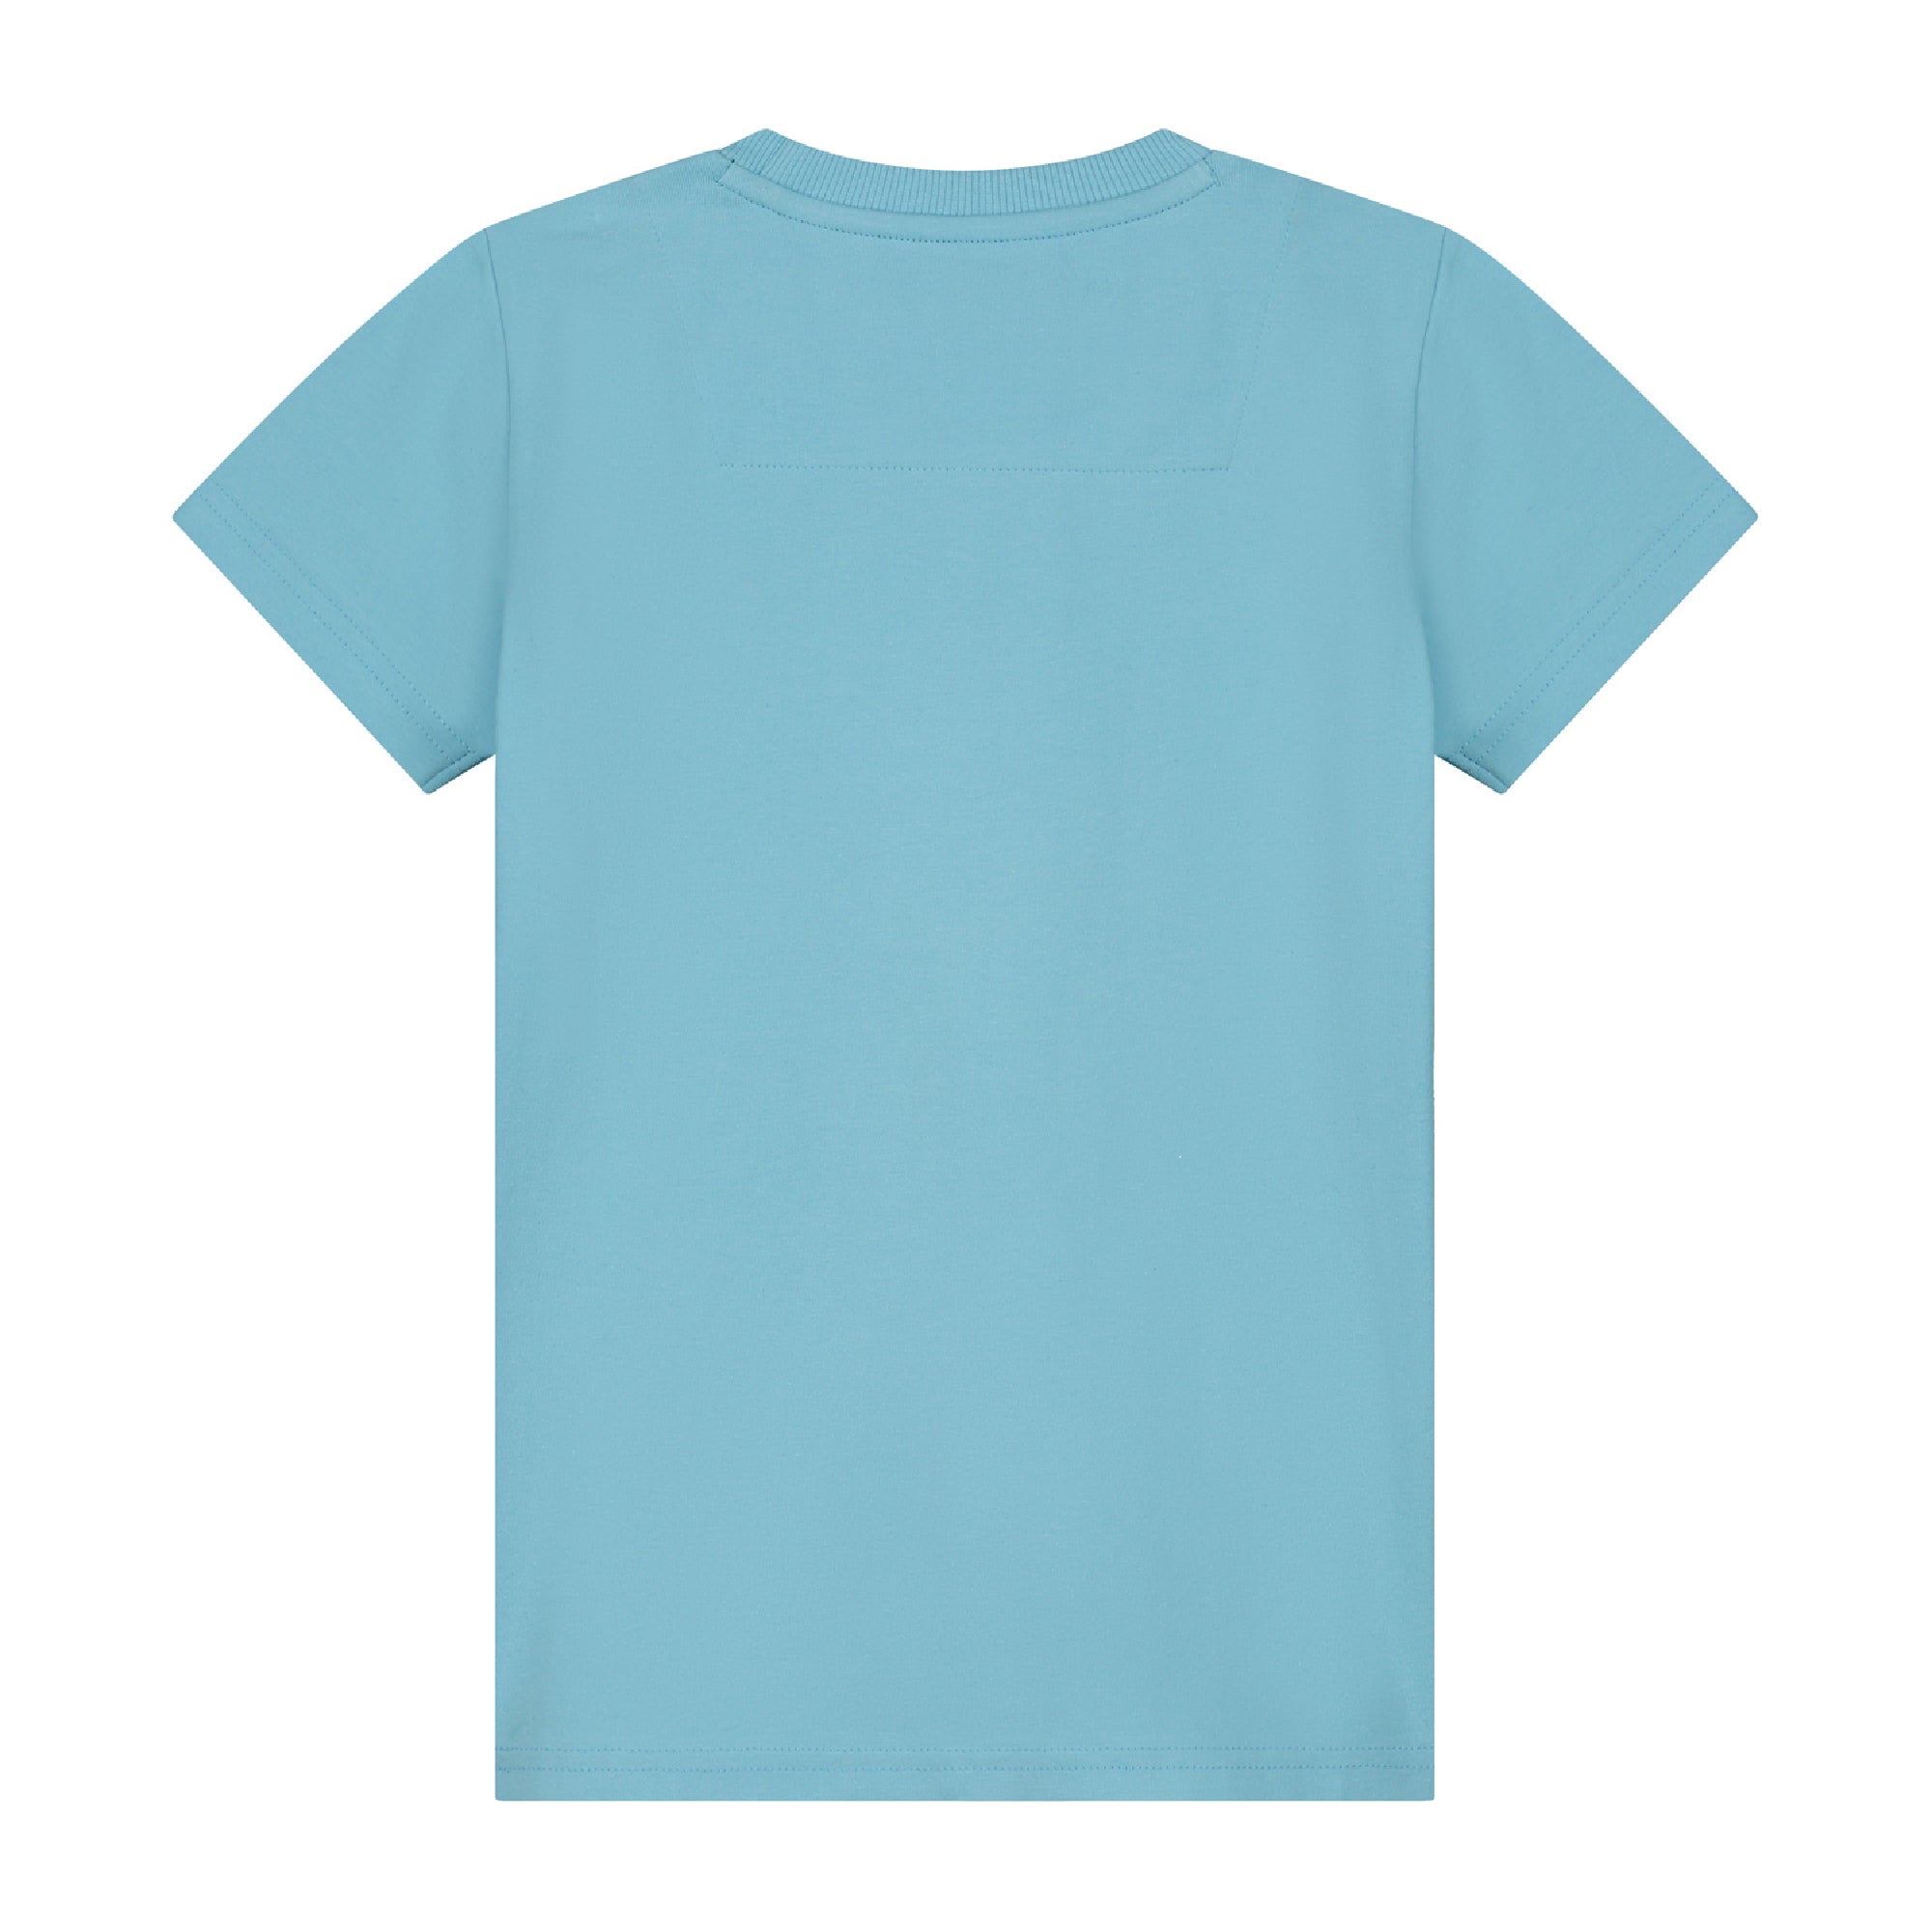 Skurk T-shirt Tiam Sky Blue